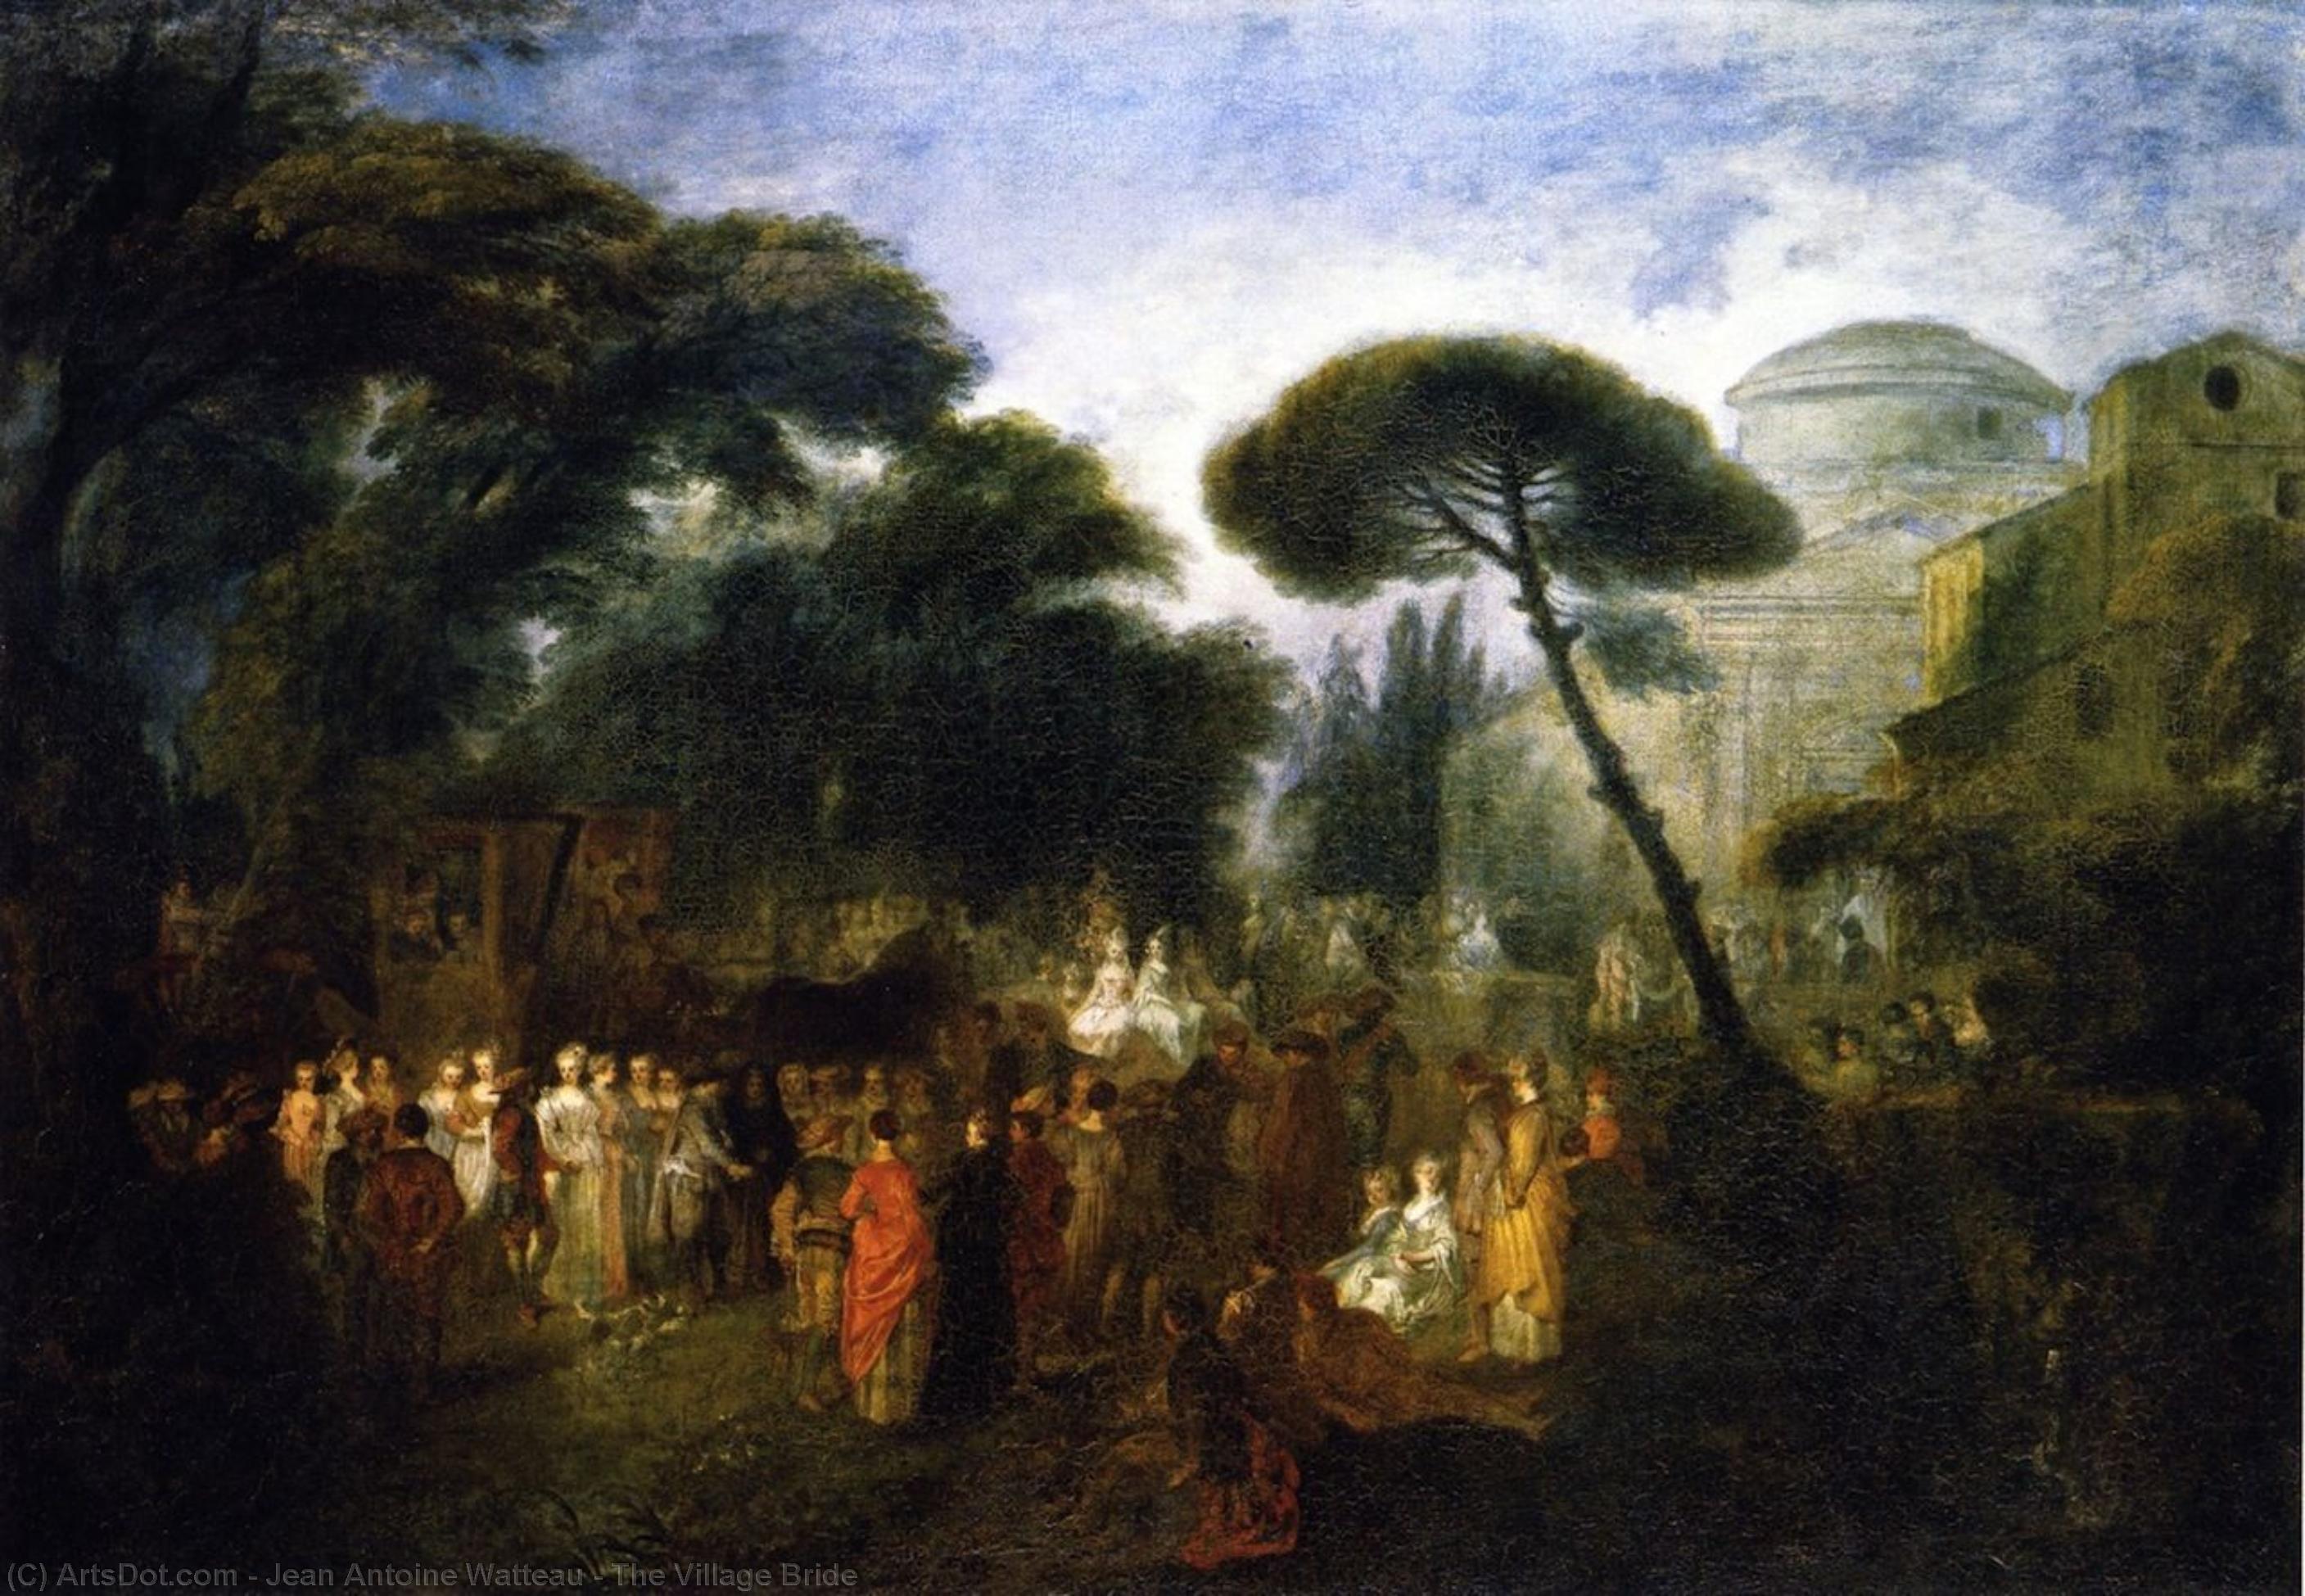 WikiOO.org - Εγκυκλοπαίδεια Καλών Τεχνών - Ζωγραφική, έργα τέχνης Jean Antoine Watteau - The Village Bride